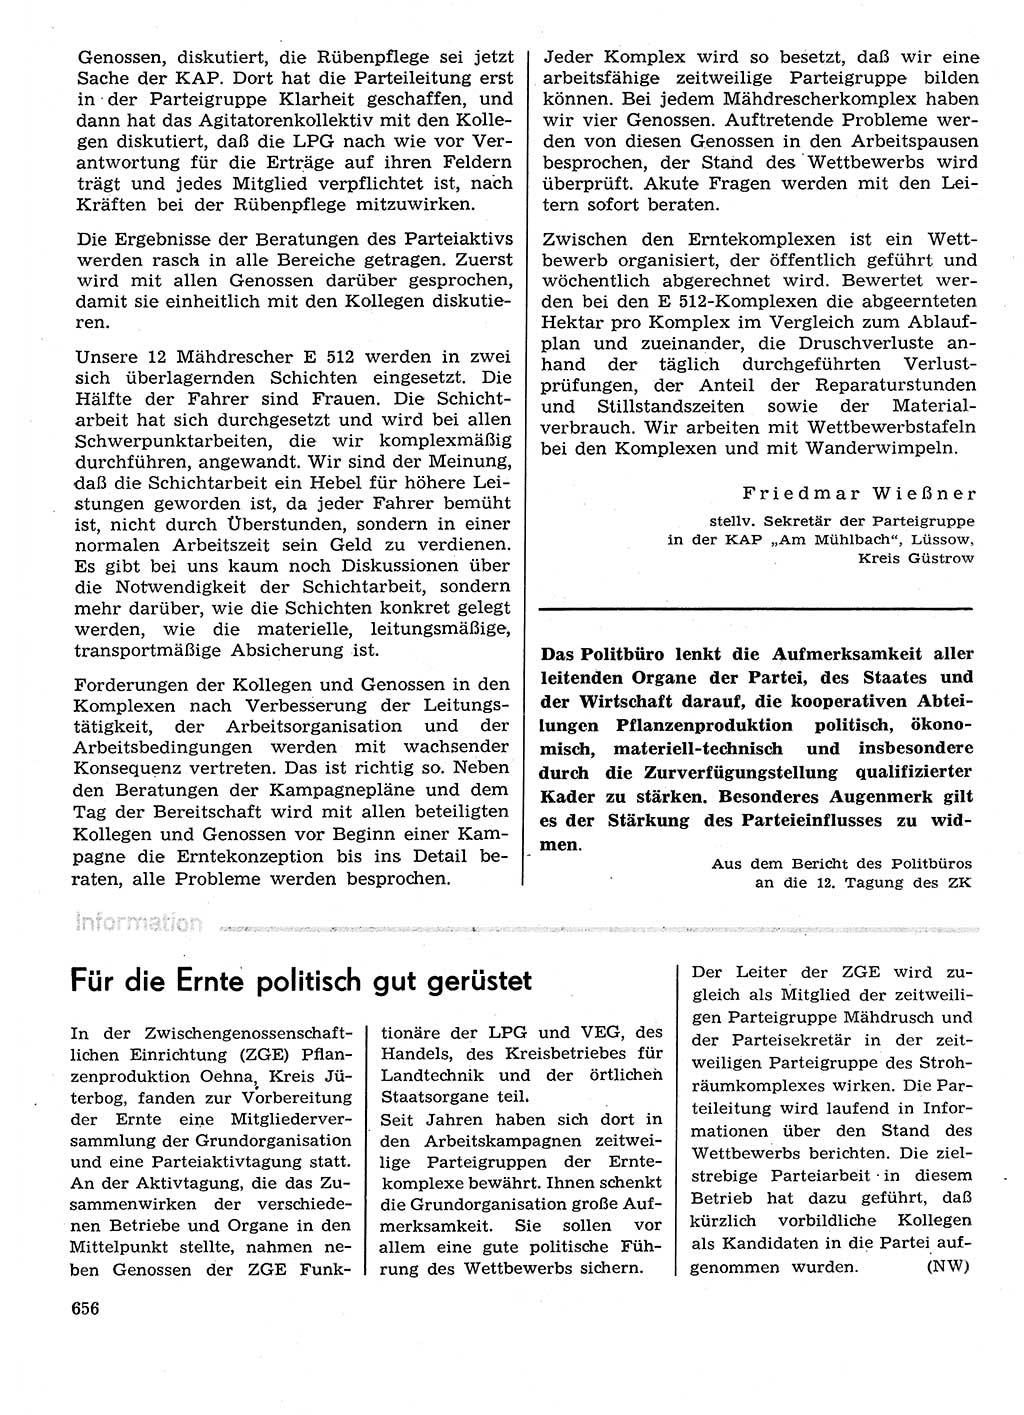 Neuer Weg (NW), Organ des Zentralkomitees (ZK) der SED (Sozialistische Einheitspartei Deutschlands) für Fragen des Parteilebens, 29. Jahrgang [Deutsche Demokratische Republik (DDR)] 1974, Seite 656 (NW ZK SED DDR 1974, S. 656)